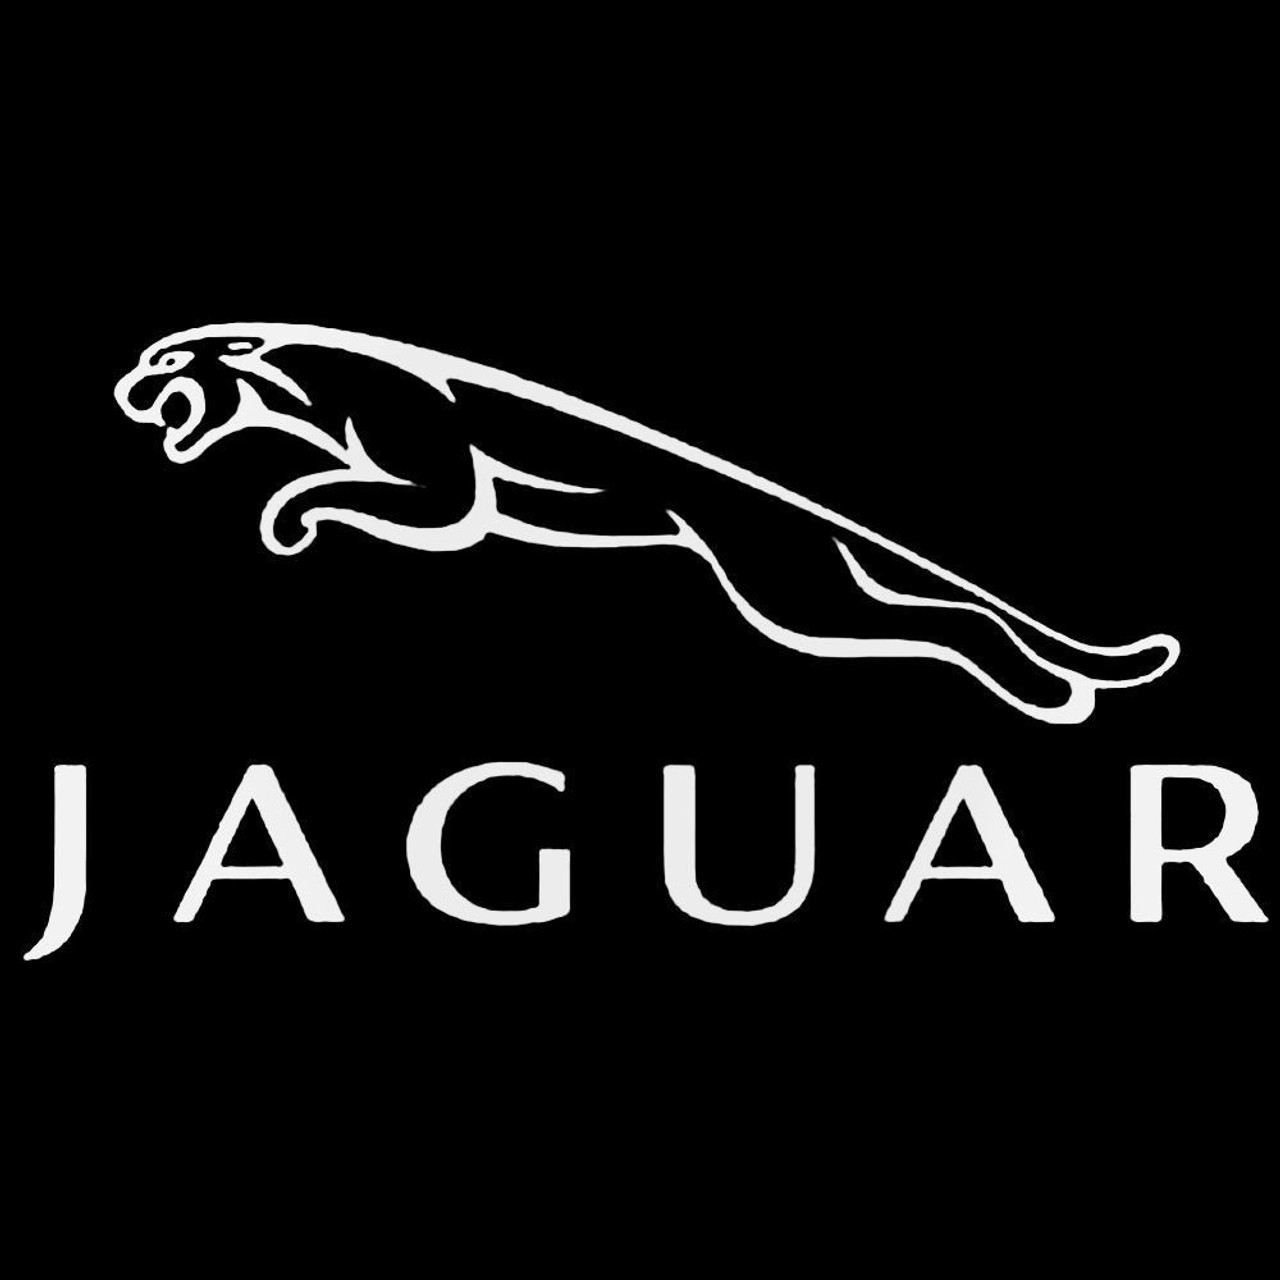 Jaguar mascot logo design Royalty Free Vector Image